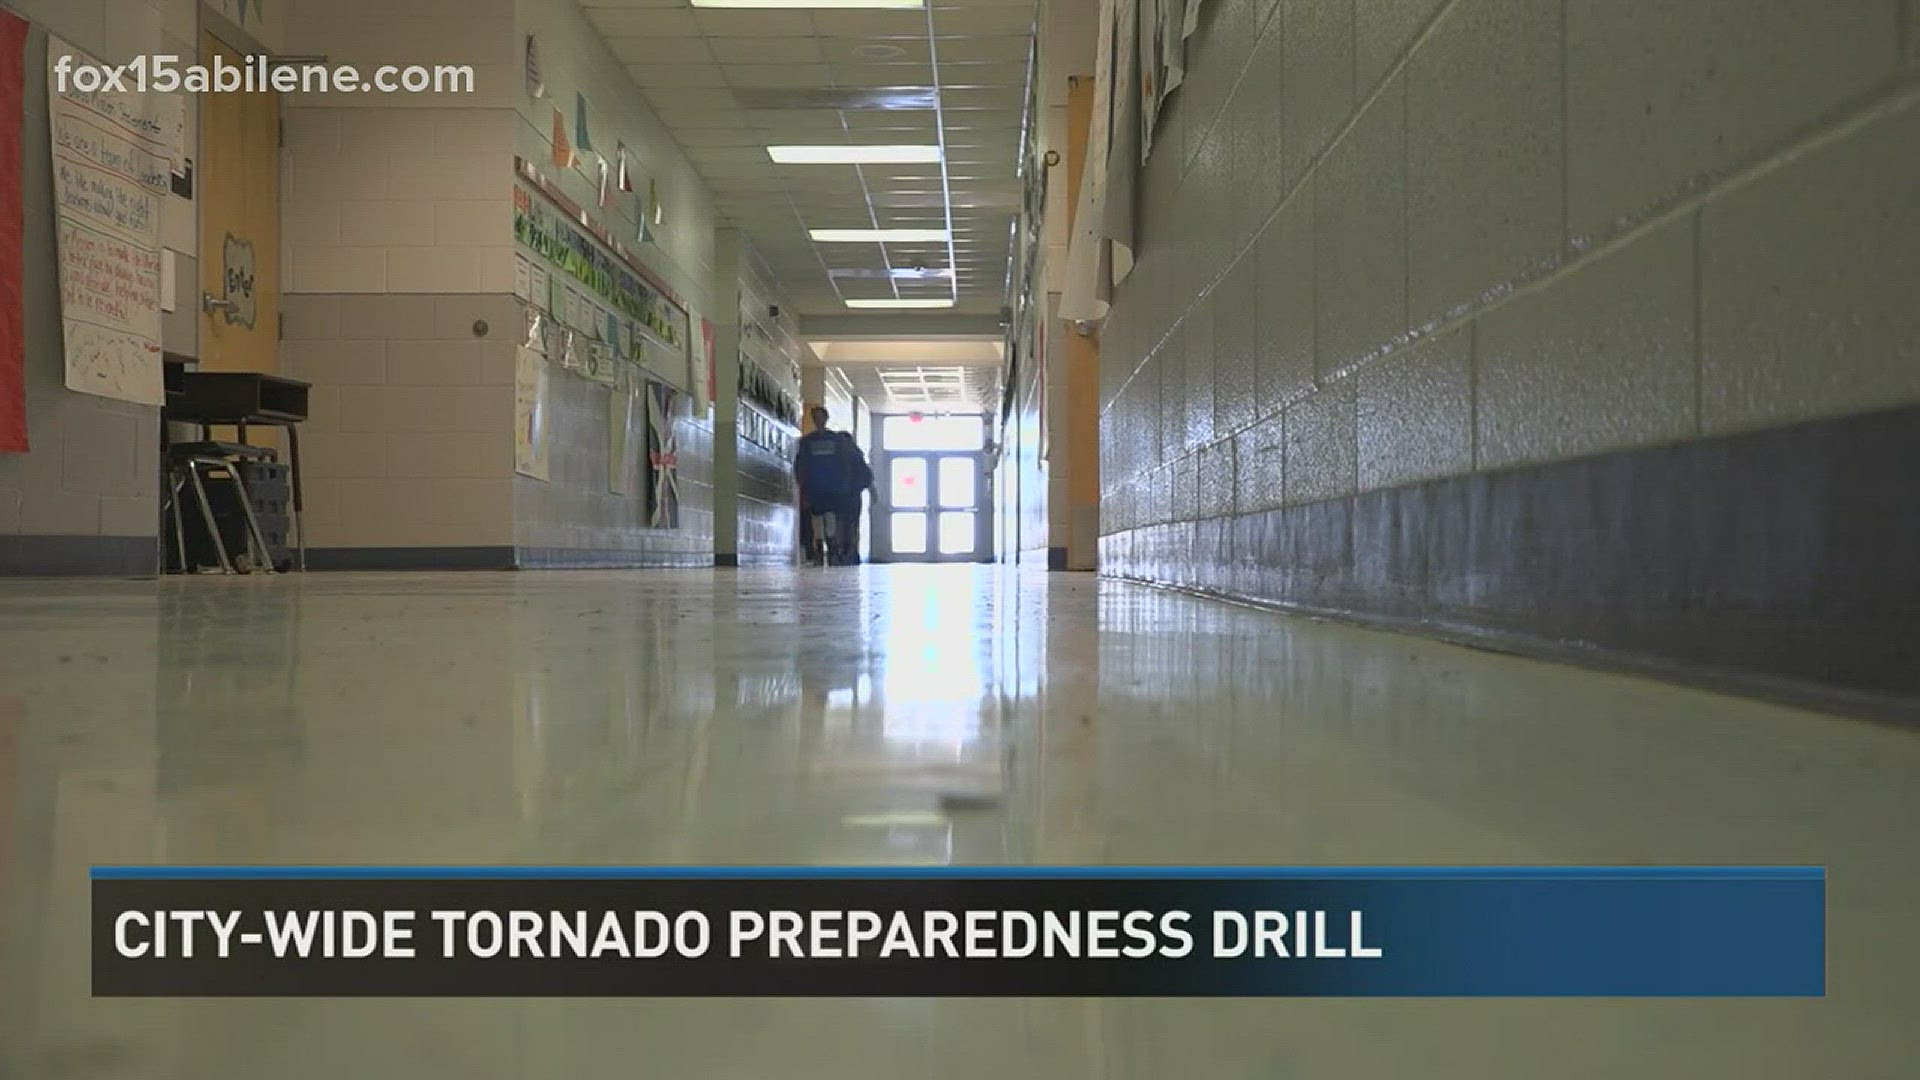 The city of Abilene conducts tornado preparedness drill